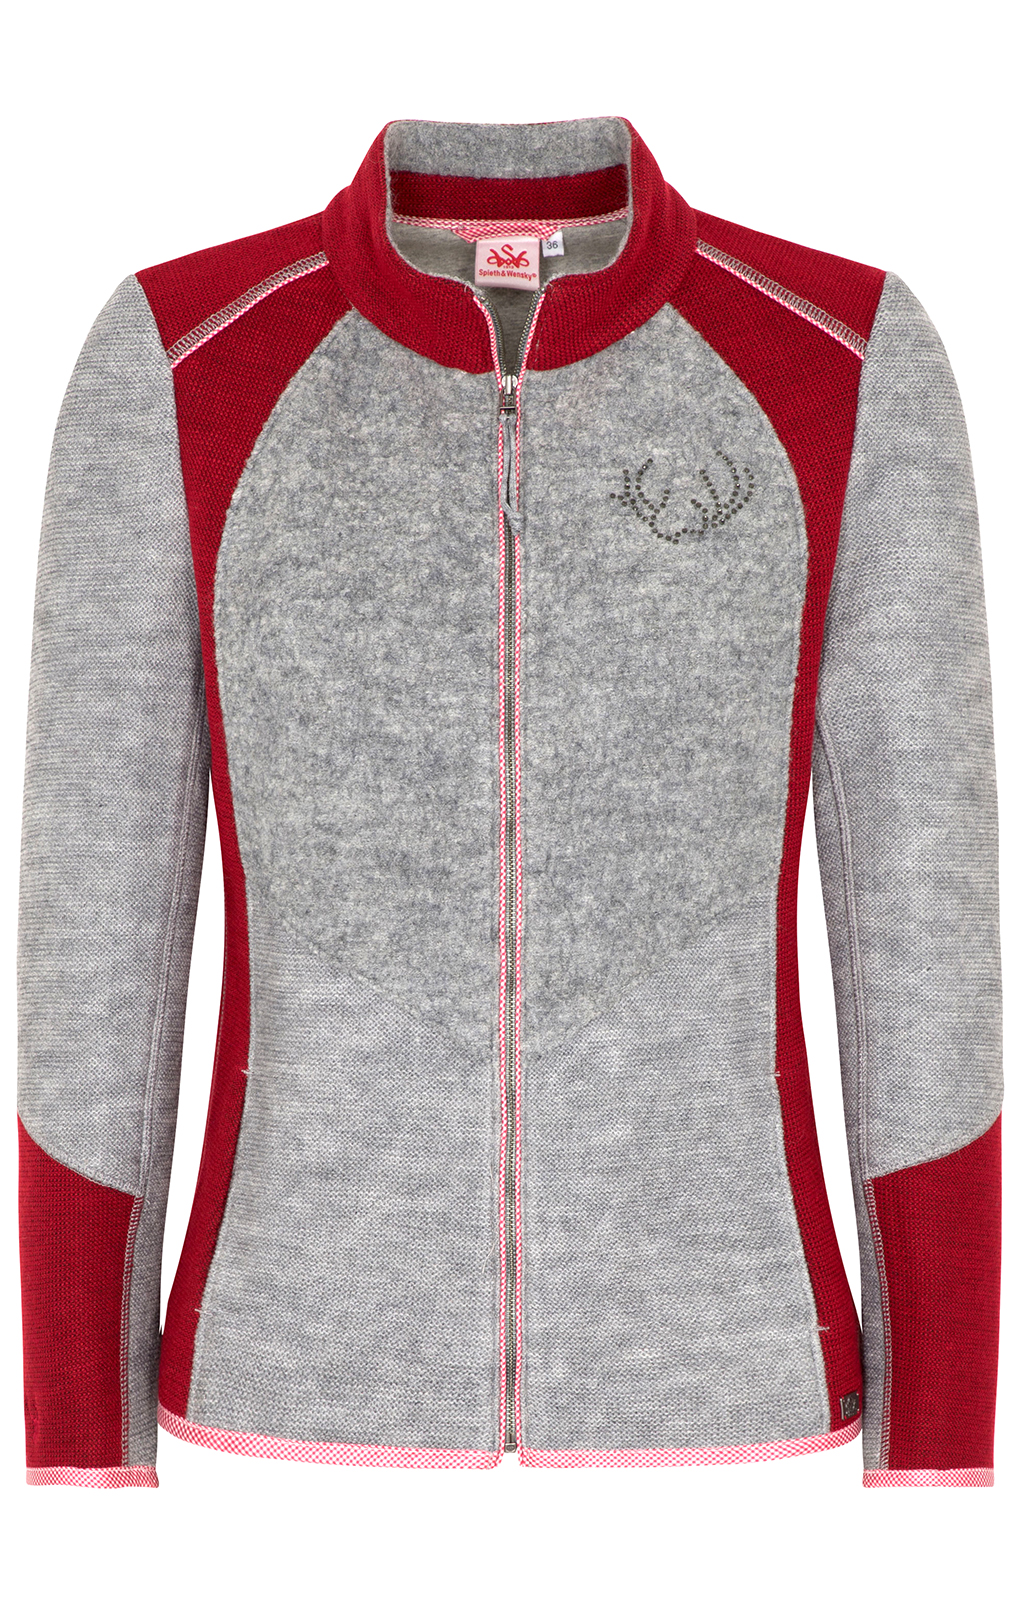 weitere Bilder von Traditional Jacket NEDLITZ light gray red